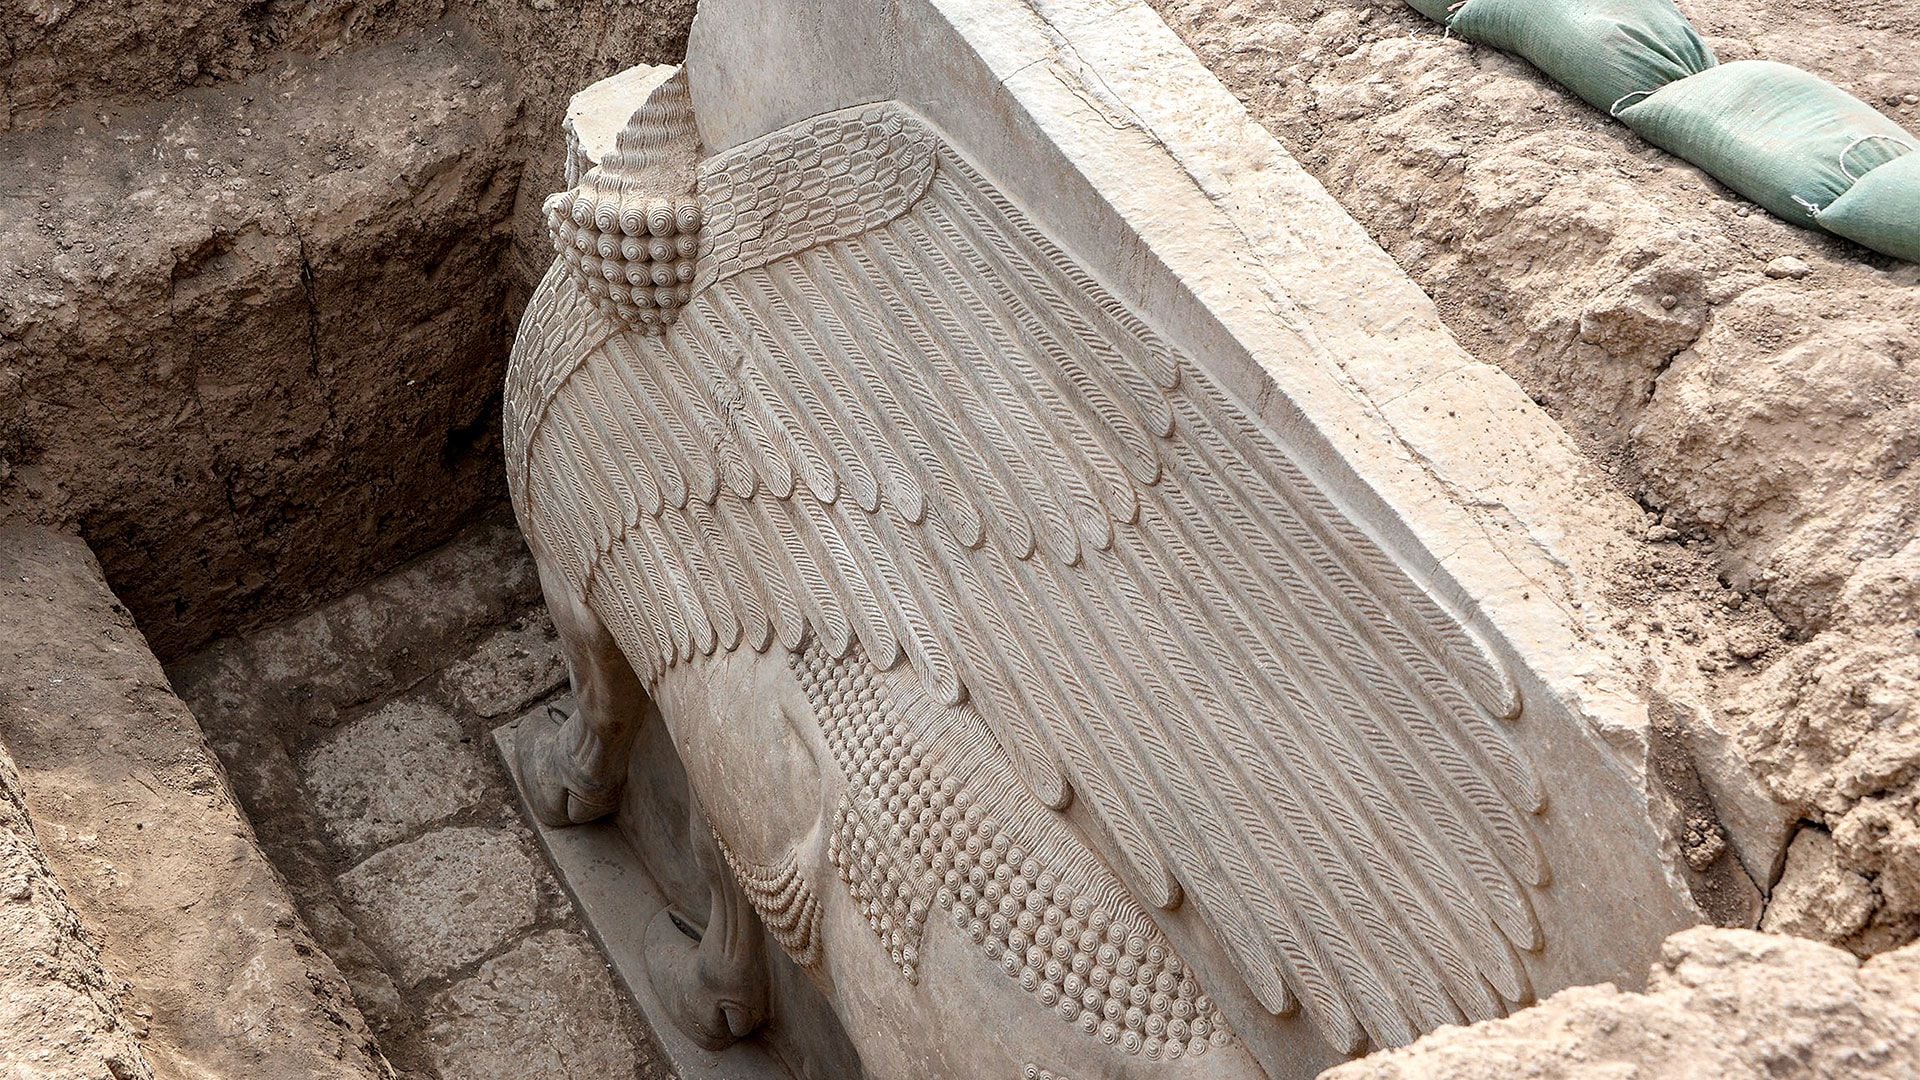 La misión arqueológica francesa se desarrolló en el sitio arqueológico de Khorsabad (también conocido como Dur- Sharrukin), la antigua capital asiria en la época de Sargón II (721–705 a. C.) en la provincia de Nínive, al norte de Irak